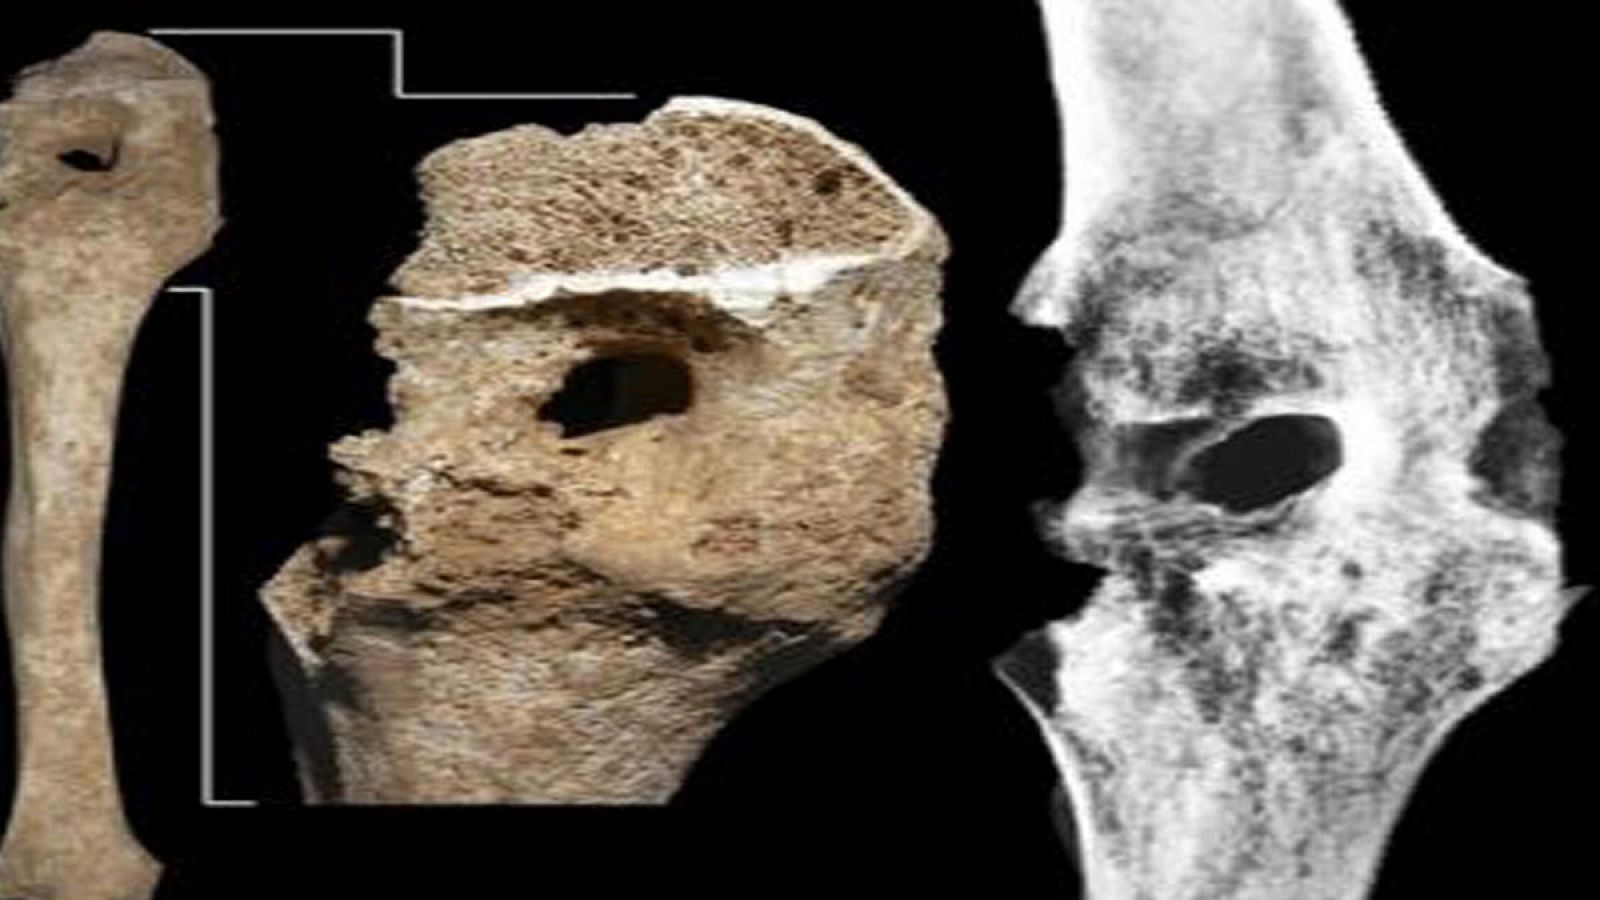 Vista general y detalle de la rodilla herida de los restos de Filipo II y una radiografía de la misma